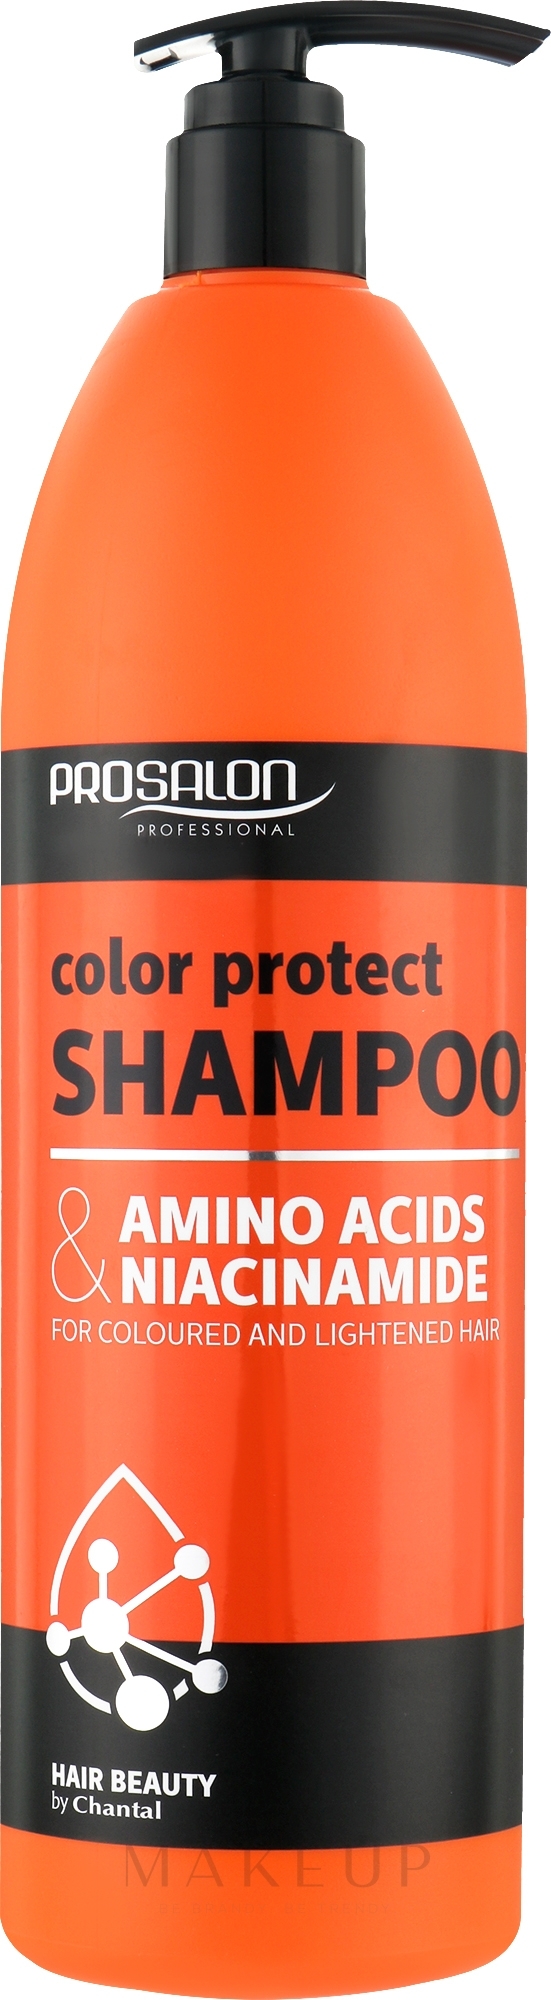 Farbschutz-Shampoo für gefärbtes Haar - Prosalon Amino Acids & Niacynamide — Bild 1000 g